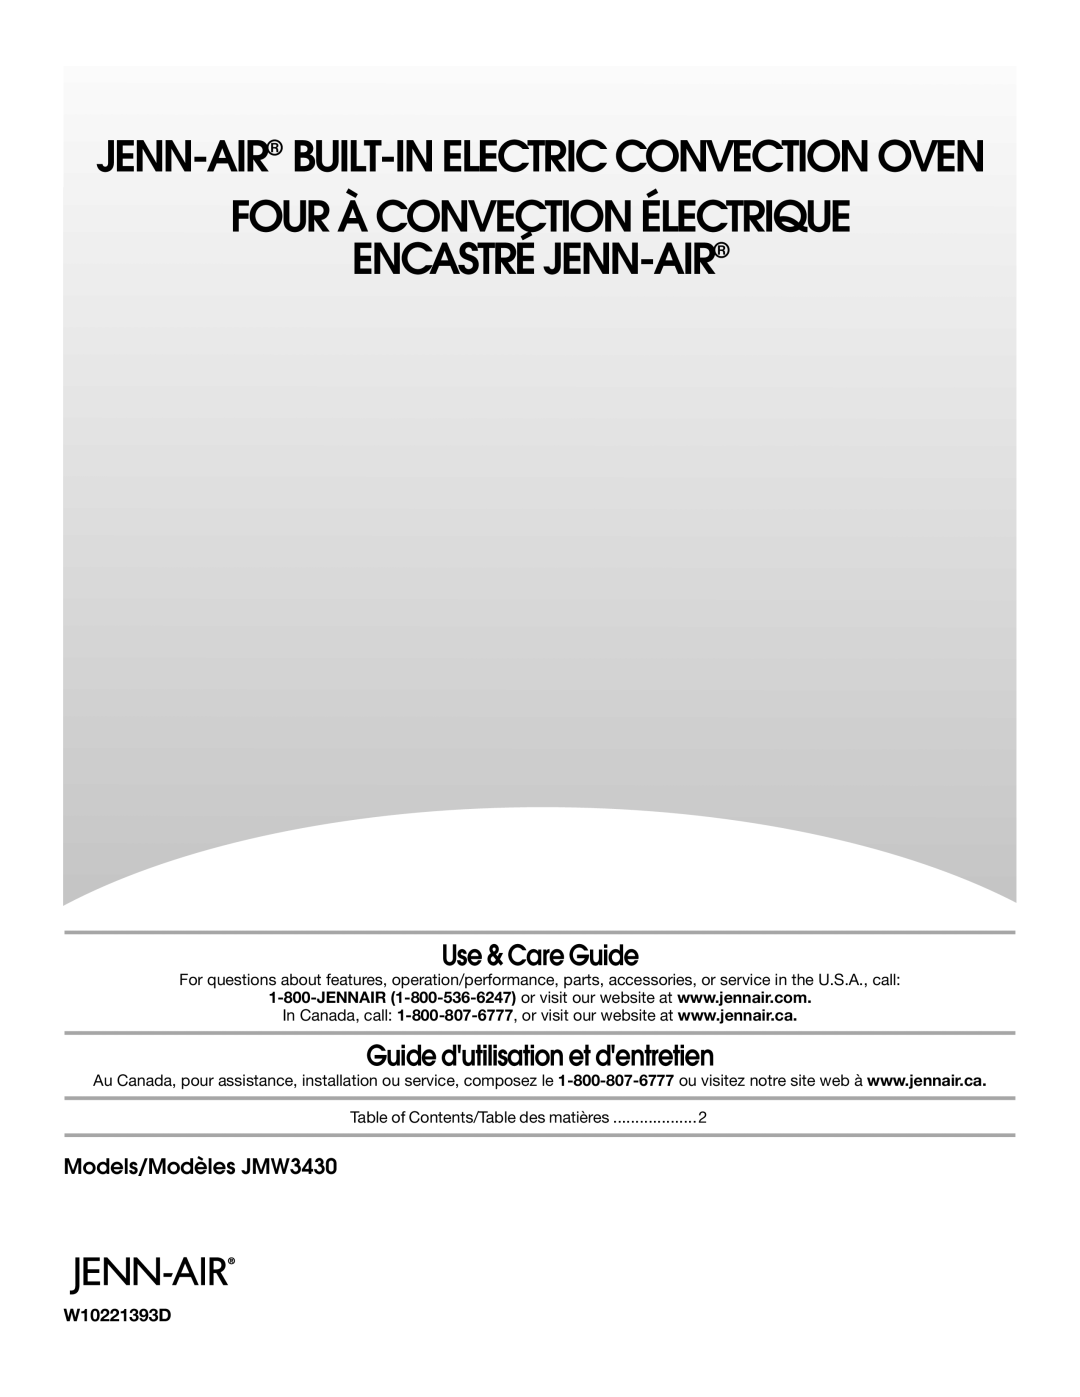 Jenn-Air manual Use & Care Guide, Guide dutilisation et dentretien, W10233422C, Models/Modèles JMW3430 